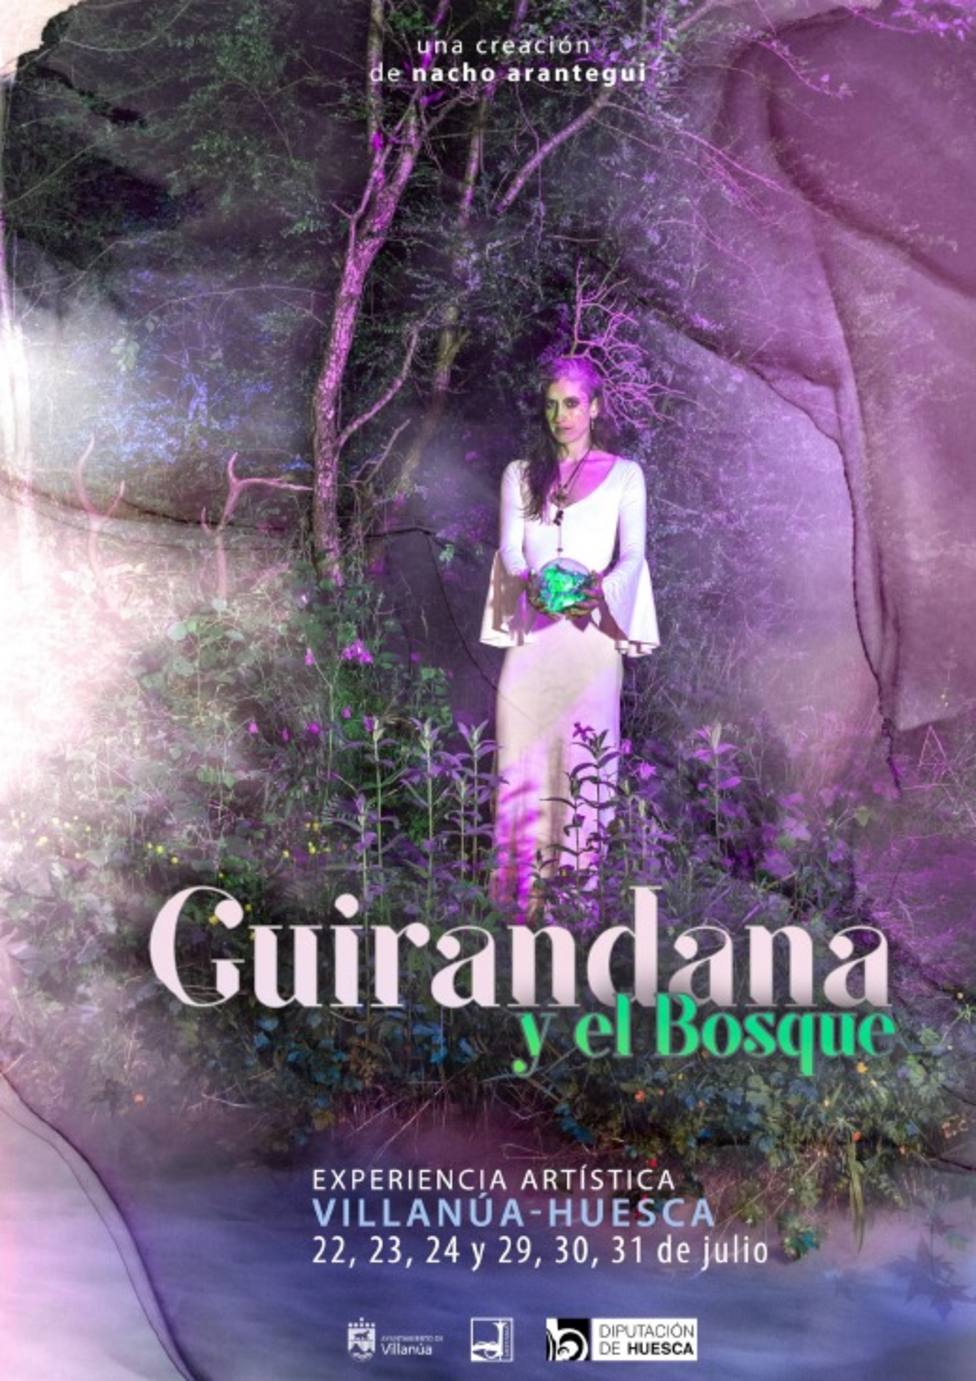 Guirandana y el bosque